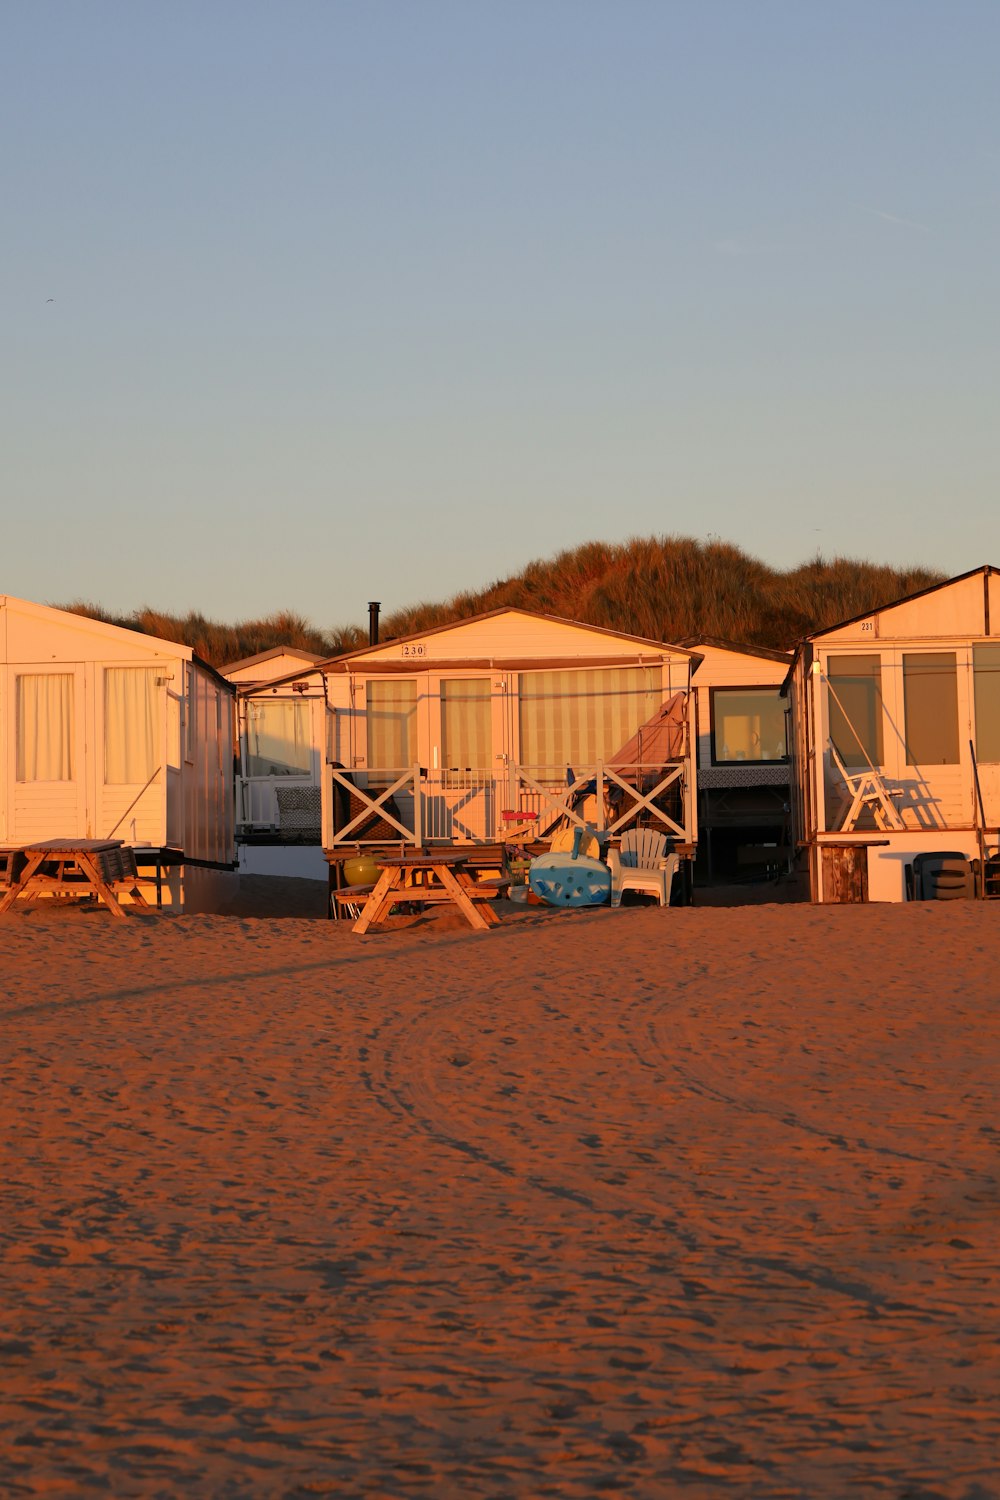 une rangée de cabanes de plage assises au sommet d’une plage de sable